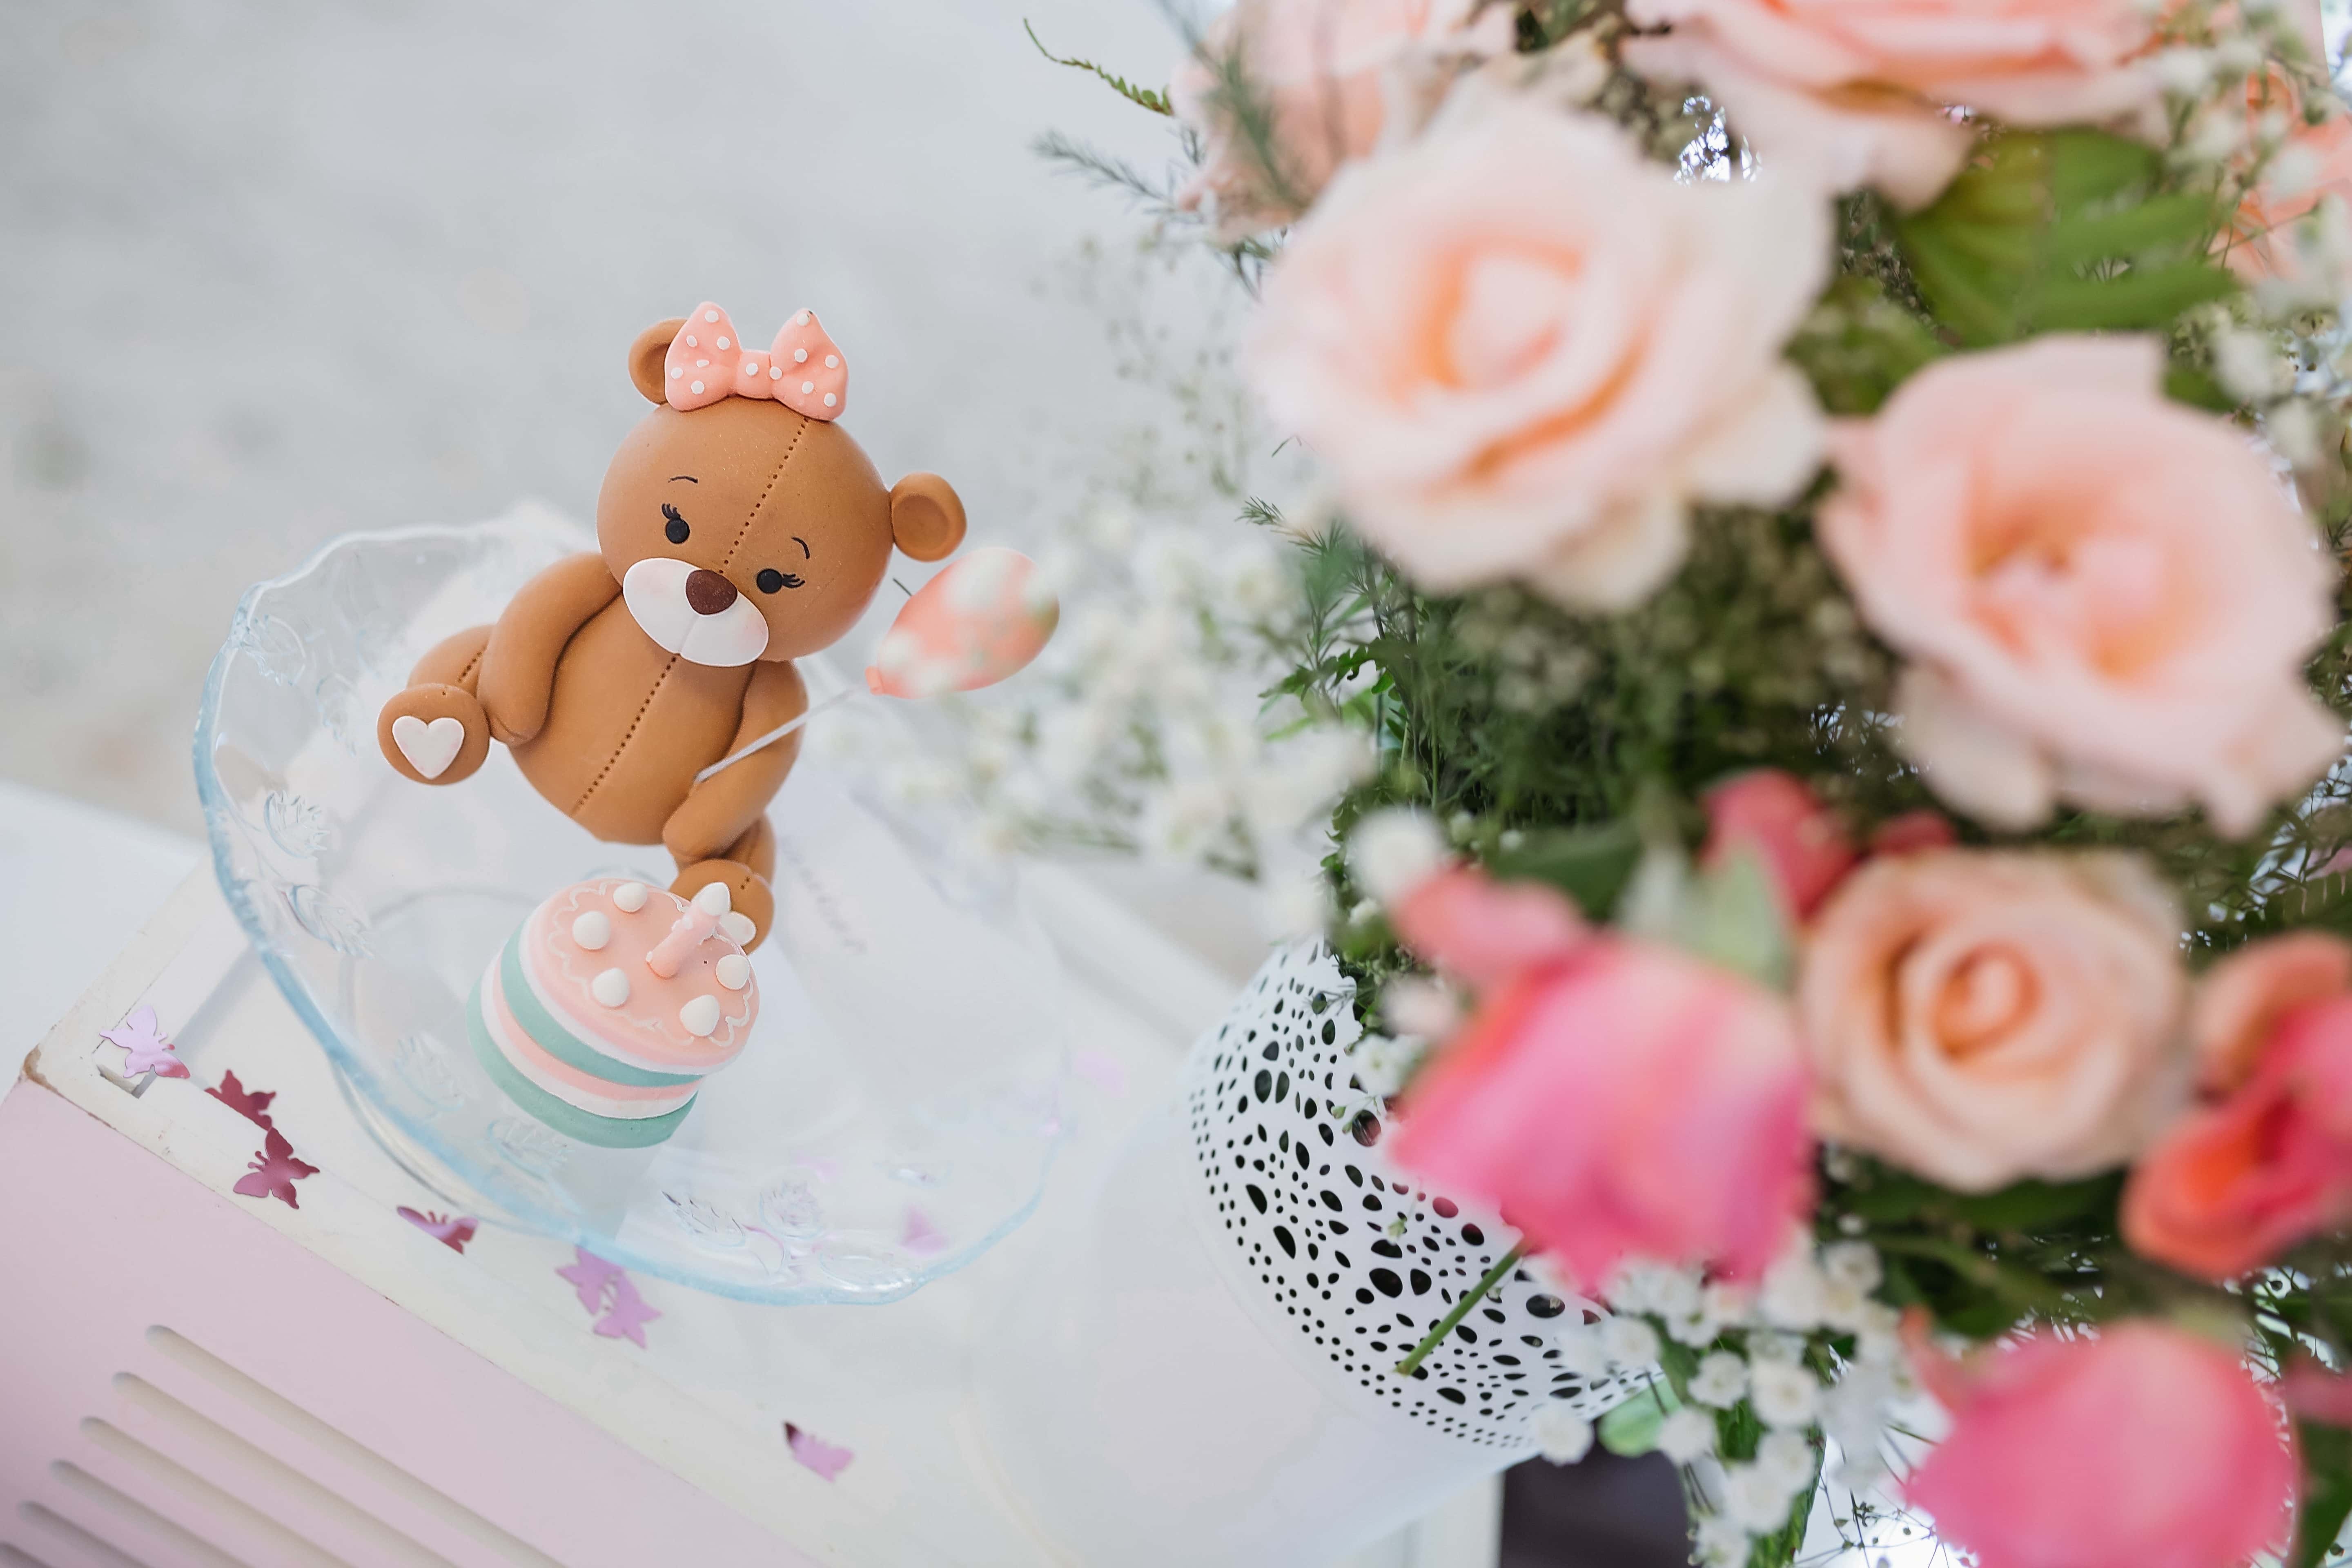 フリー写真画像 誕生日ケーキ テディベアおもちゃ 花束 装飾 配置 花 ローズ 婚約 お祝い 誕生日